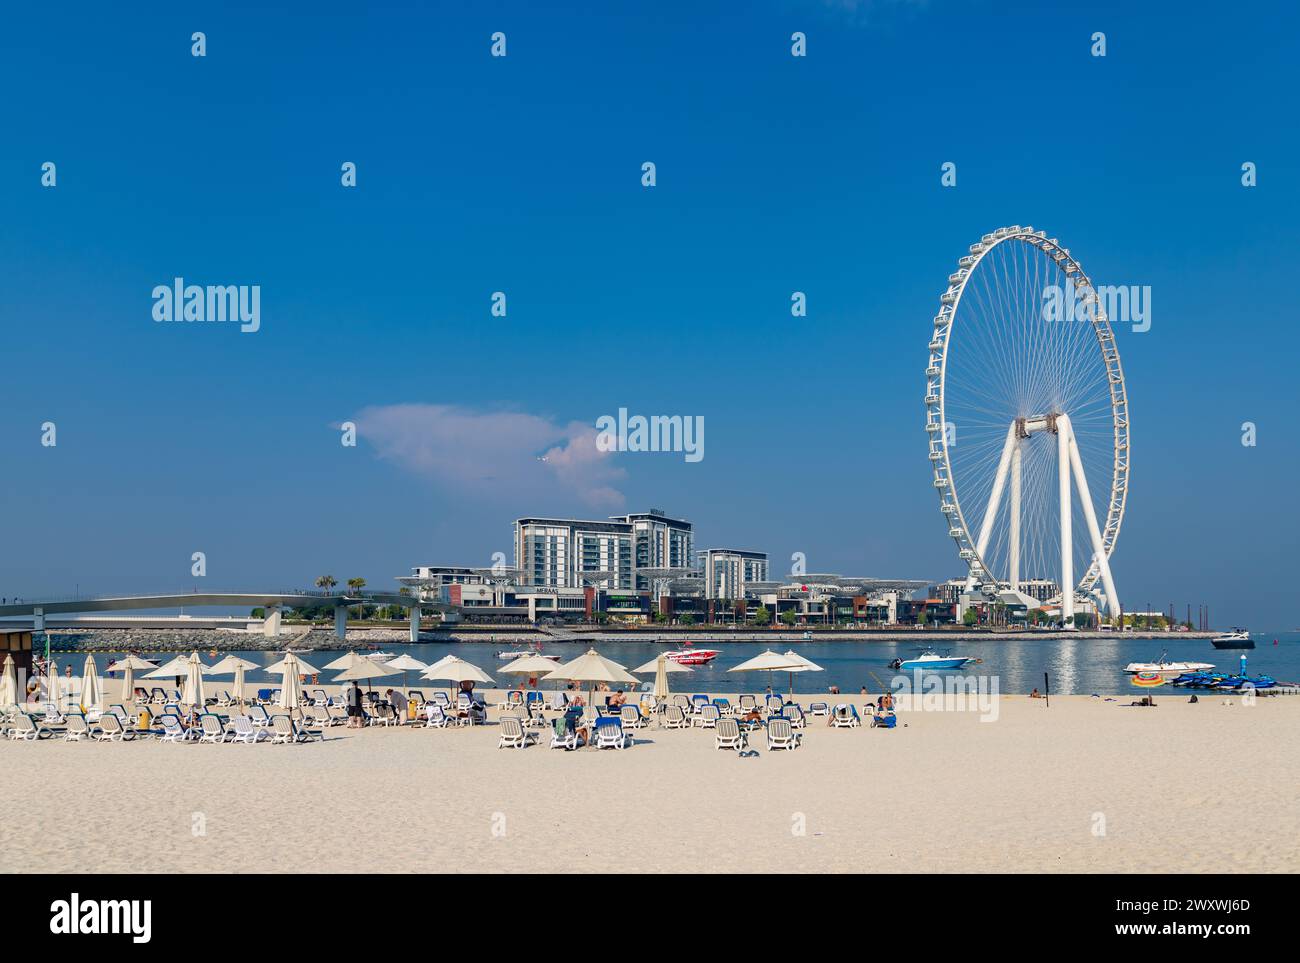 Ein Bild vom Marina Beach und dem Riesenrad von Ain Dubai. Stockfoto